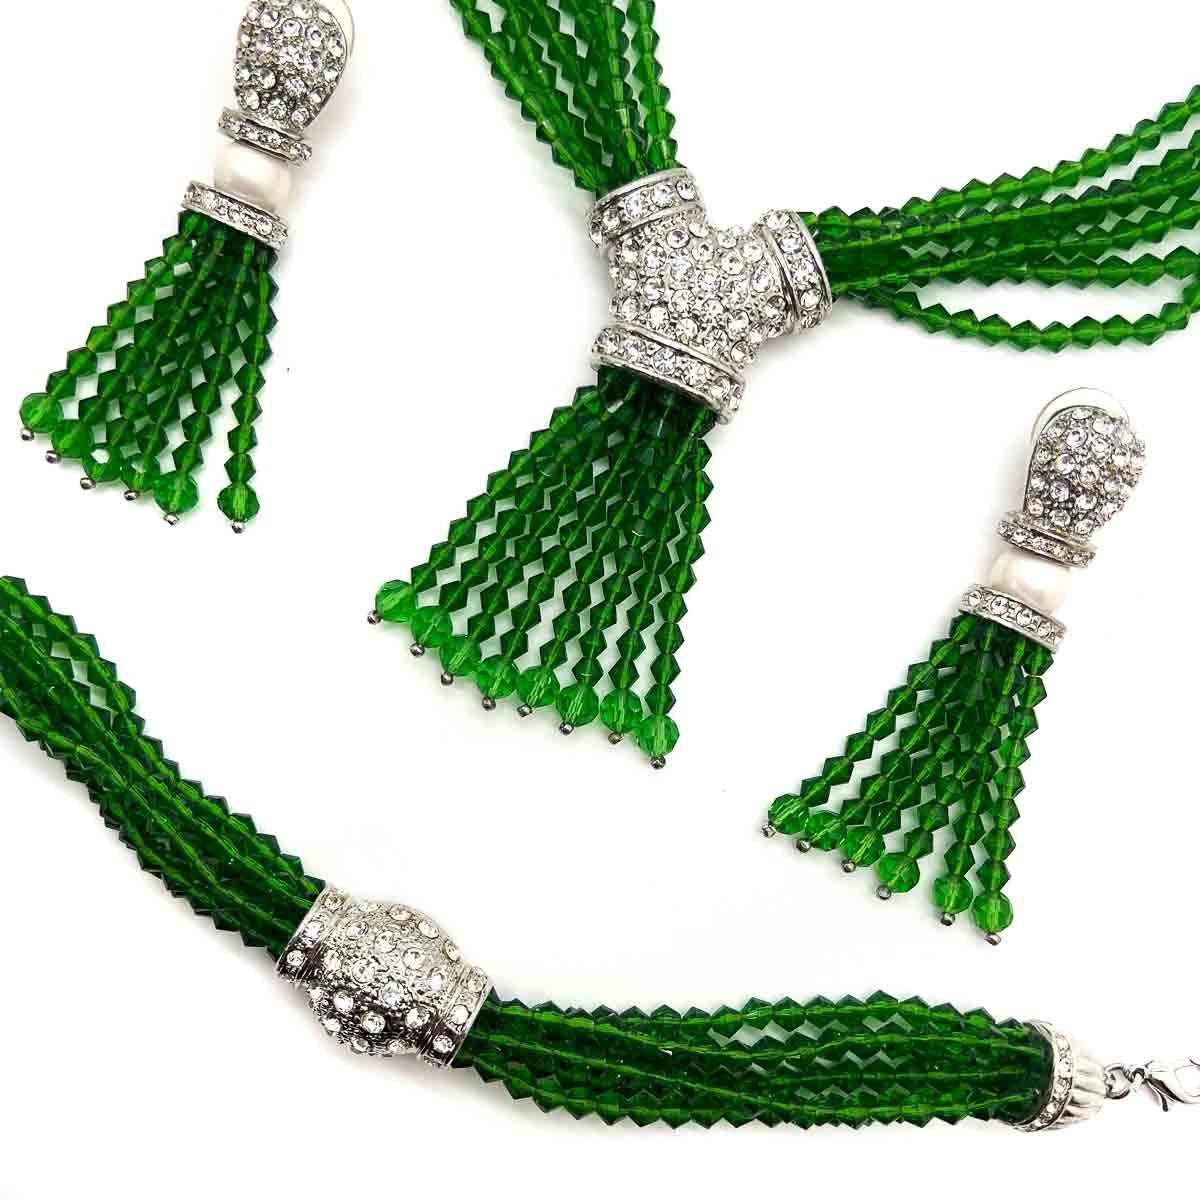 Eine prächtige Suite, eine Vintage Emerald Glass Torsade Halskette, Armband und Statement-Ohrringe. Smaragdfarbene facettierte Perlen, Perlen und weiße Kristalle bilden eine zeitlose Kombination. Tragen Sie sie zusammen, um ein Maximum an Wirkung zu